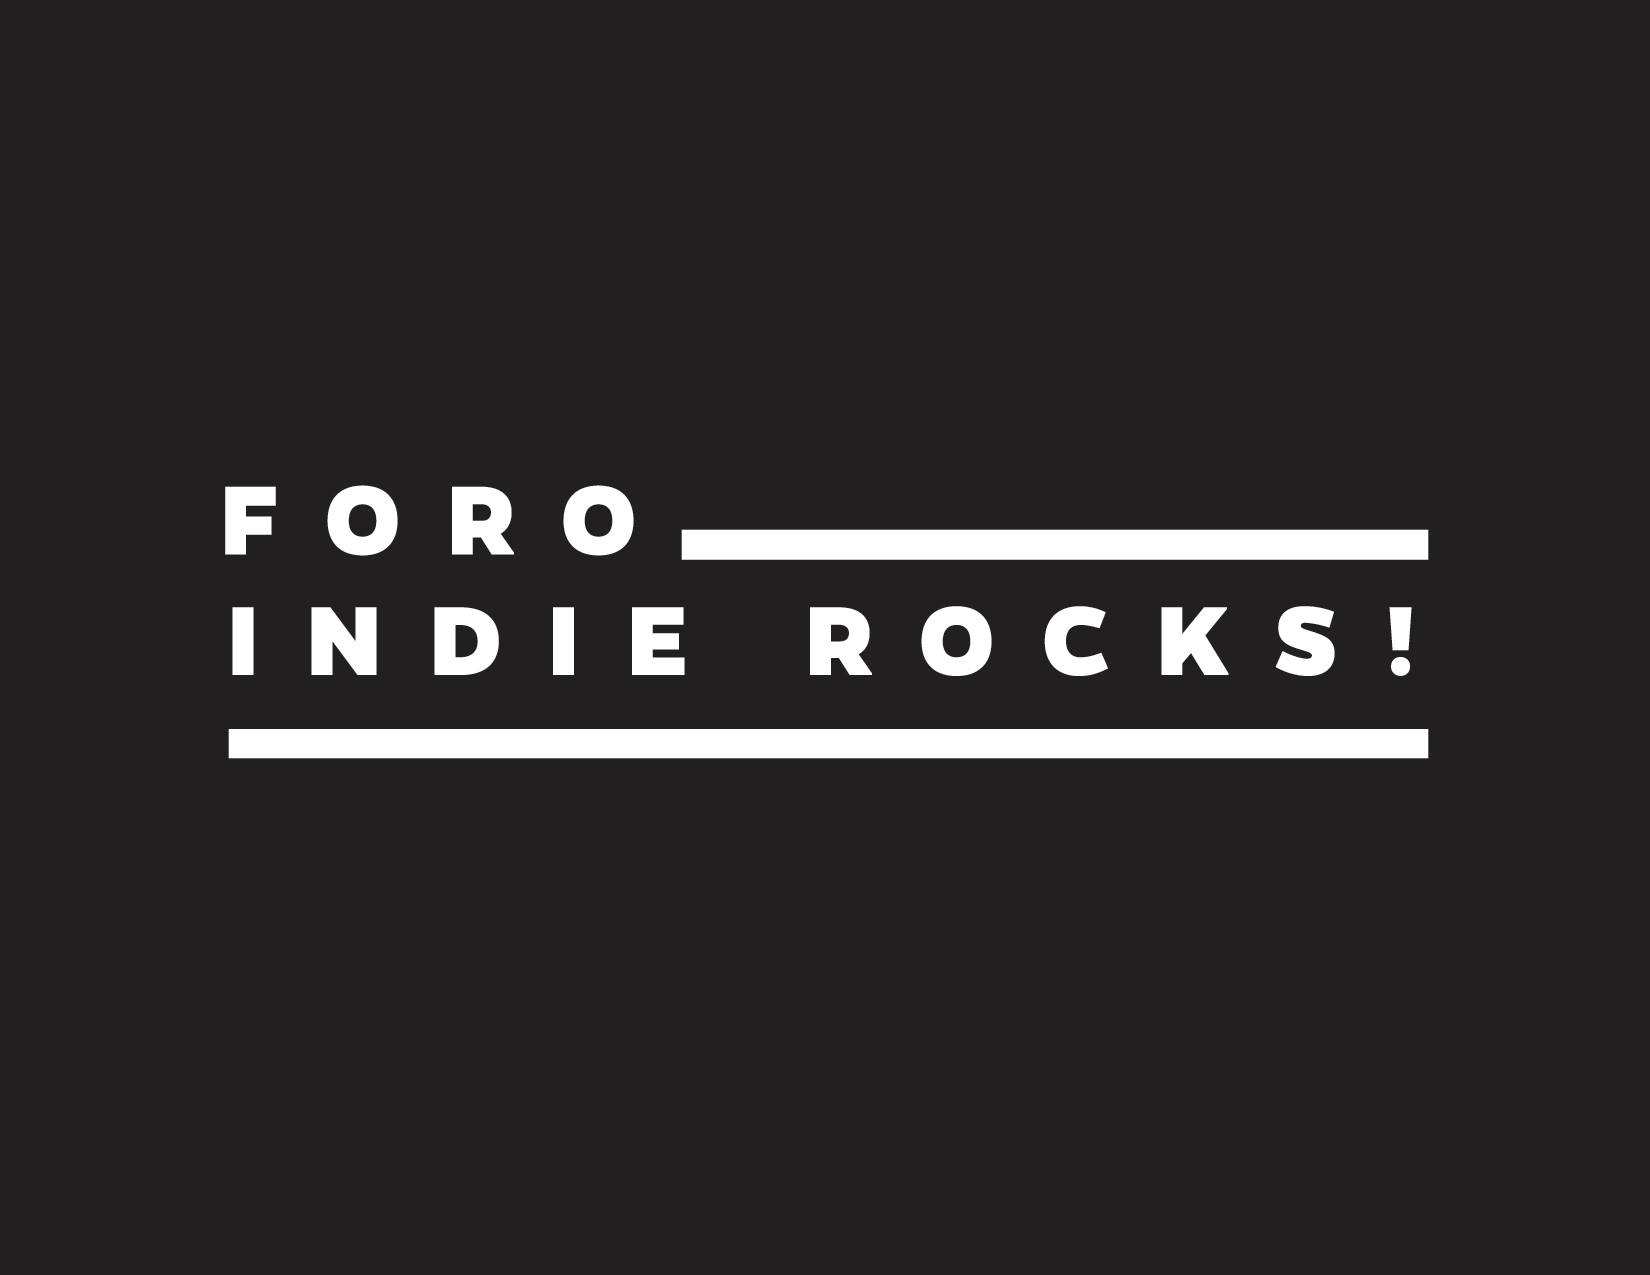 Foro Indie Rocks!